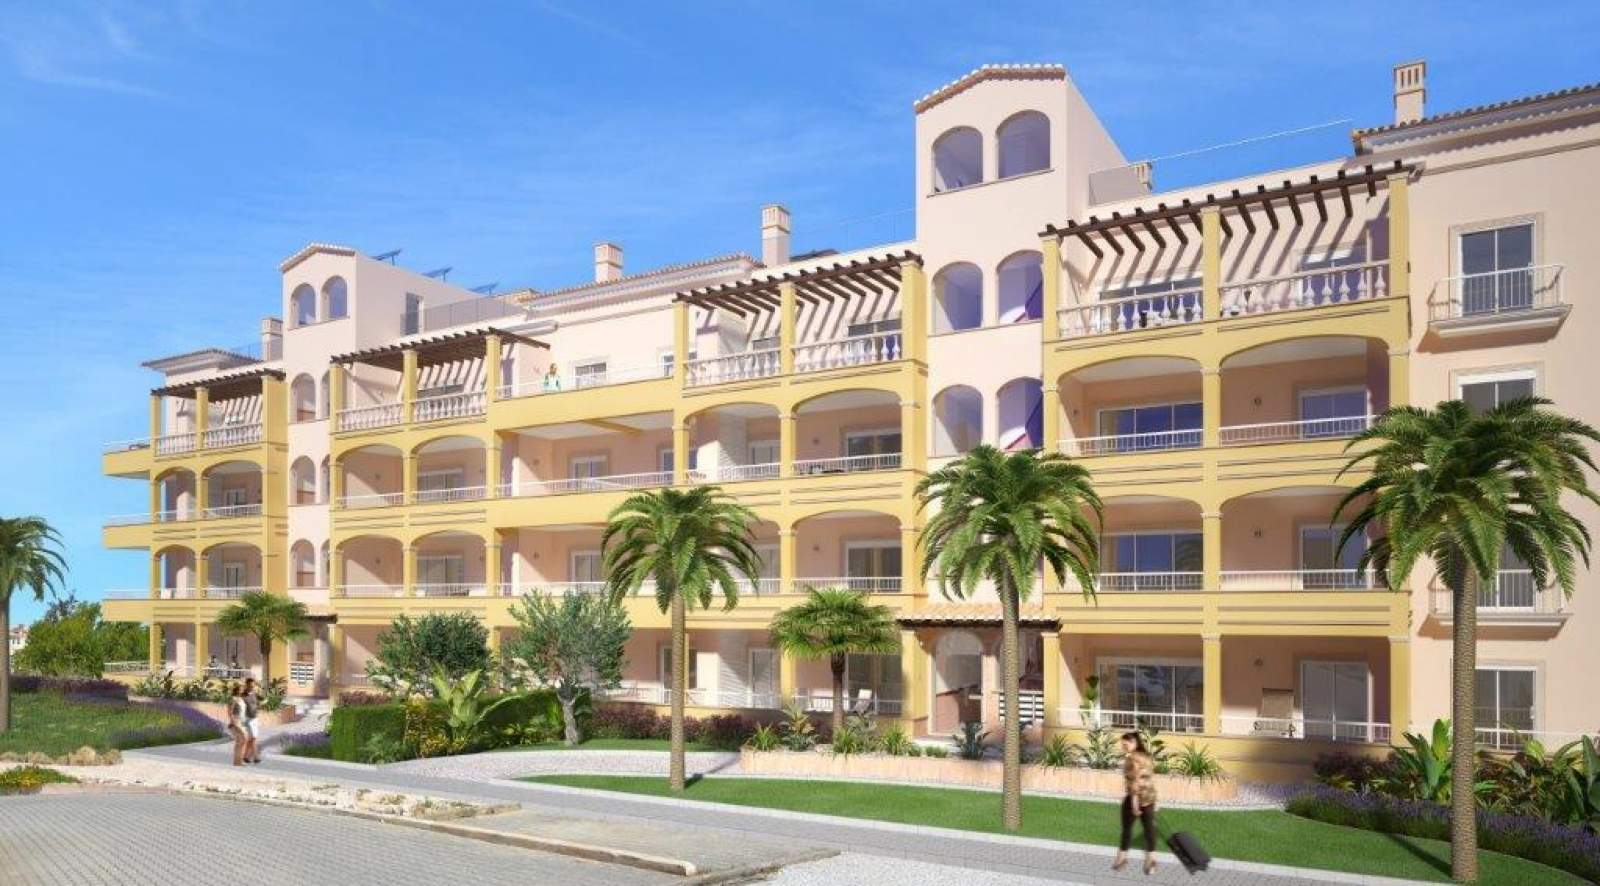 Verkauf einer Wohnung im Bau, mit Terrasse, in Lagos, Portugal_141555